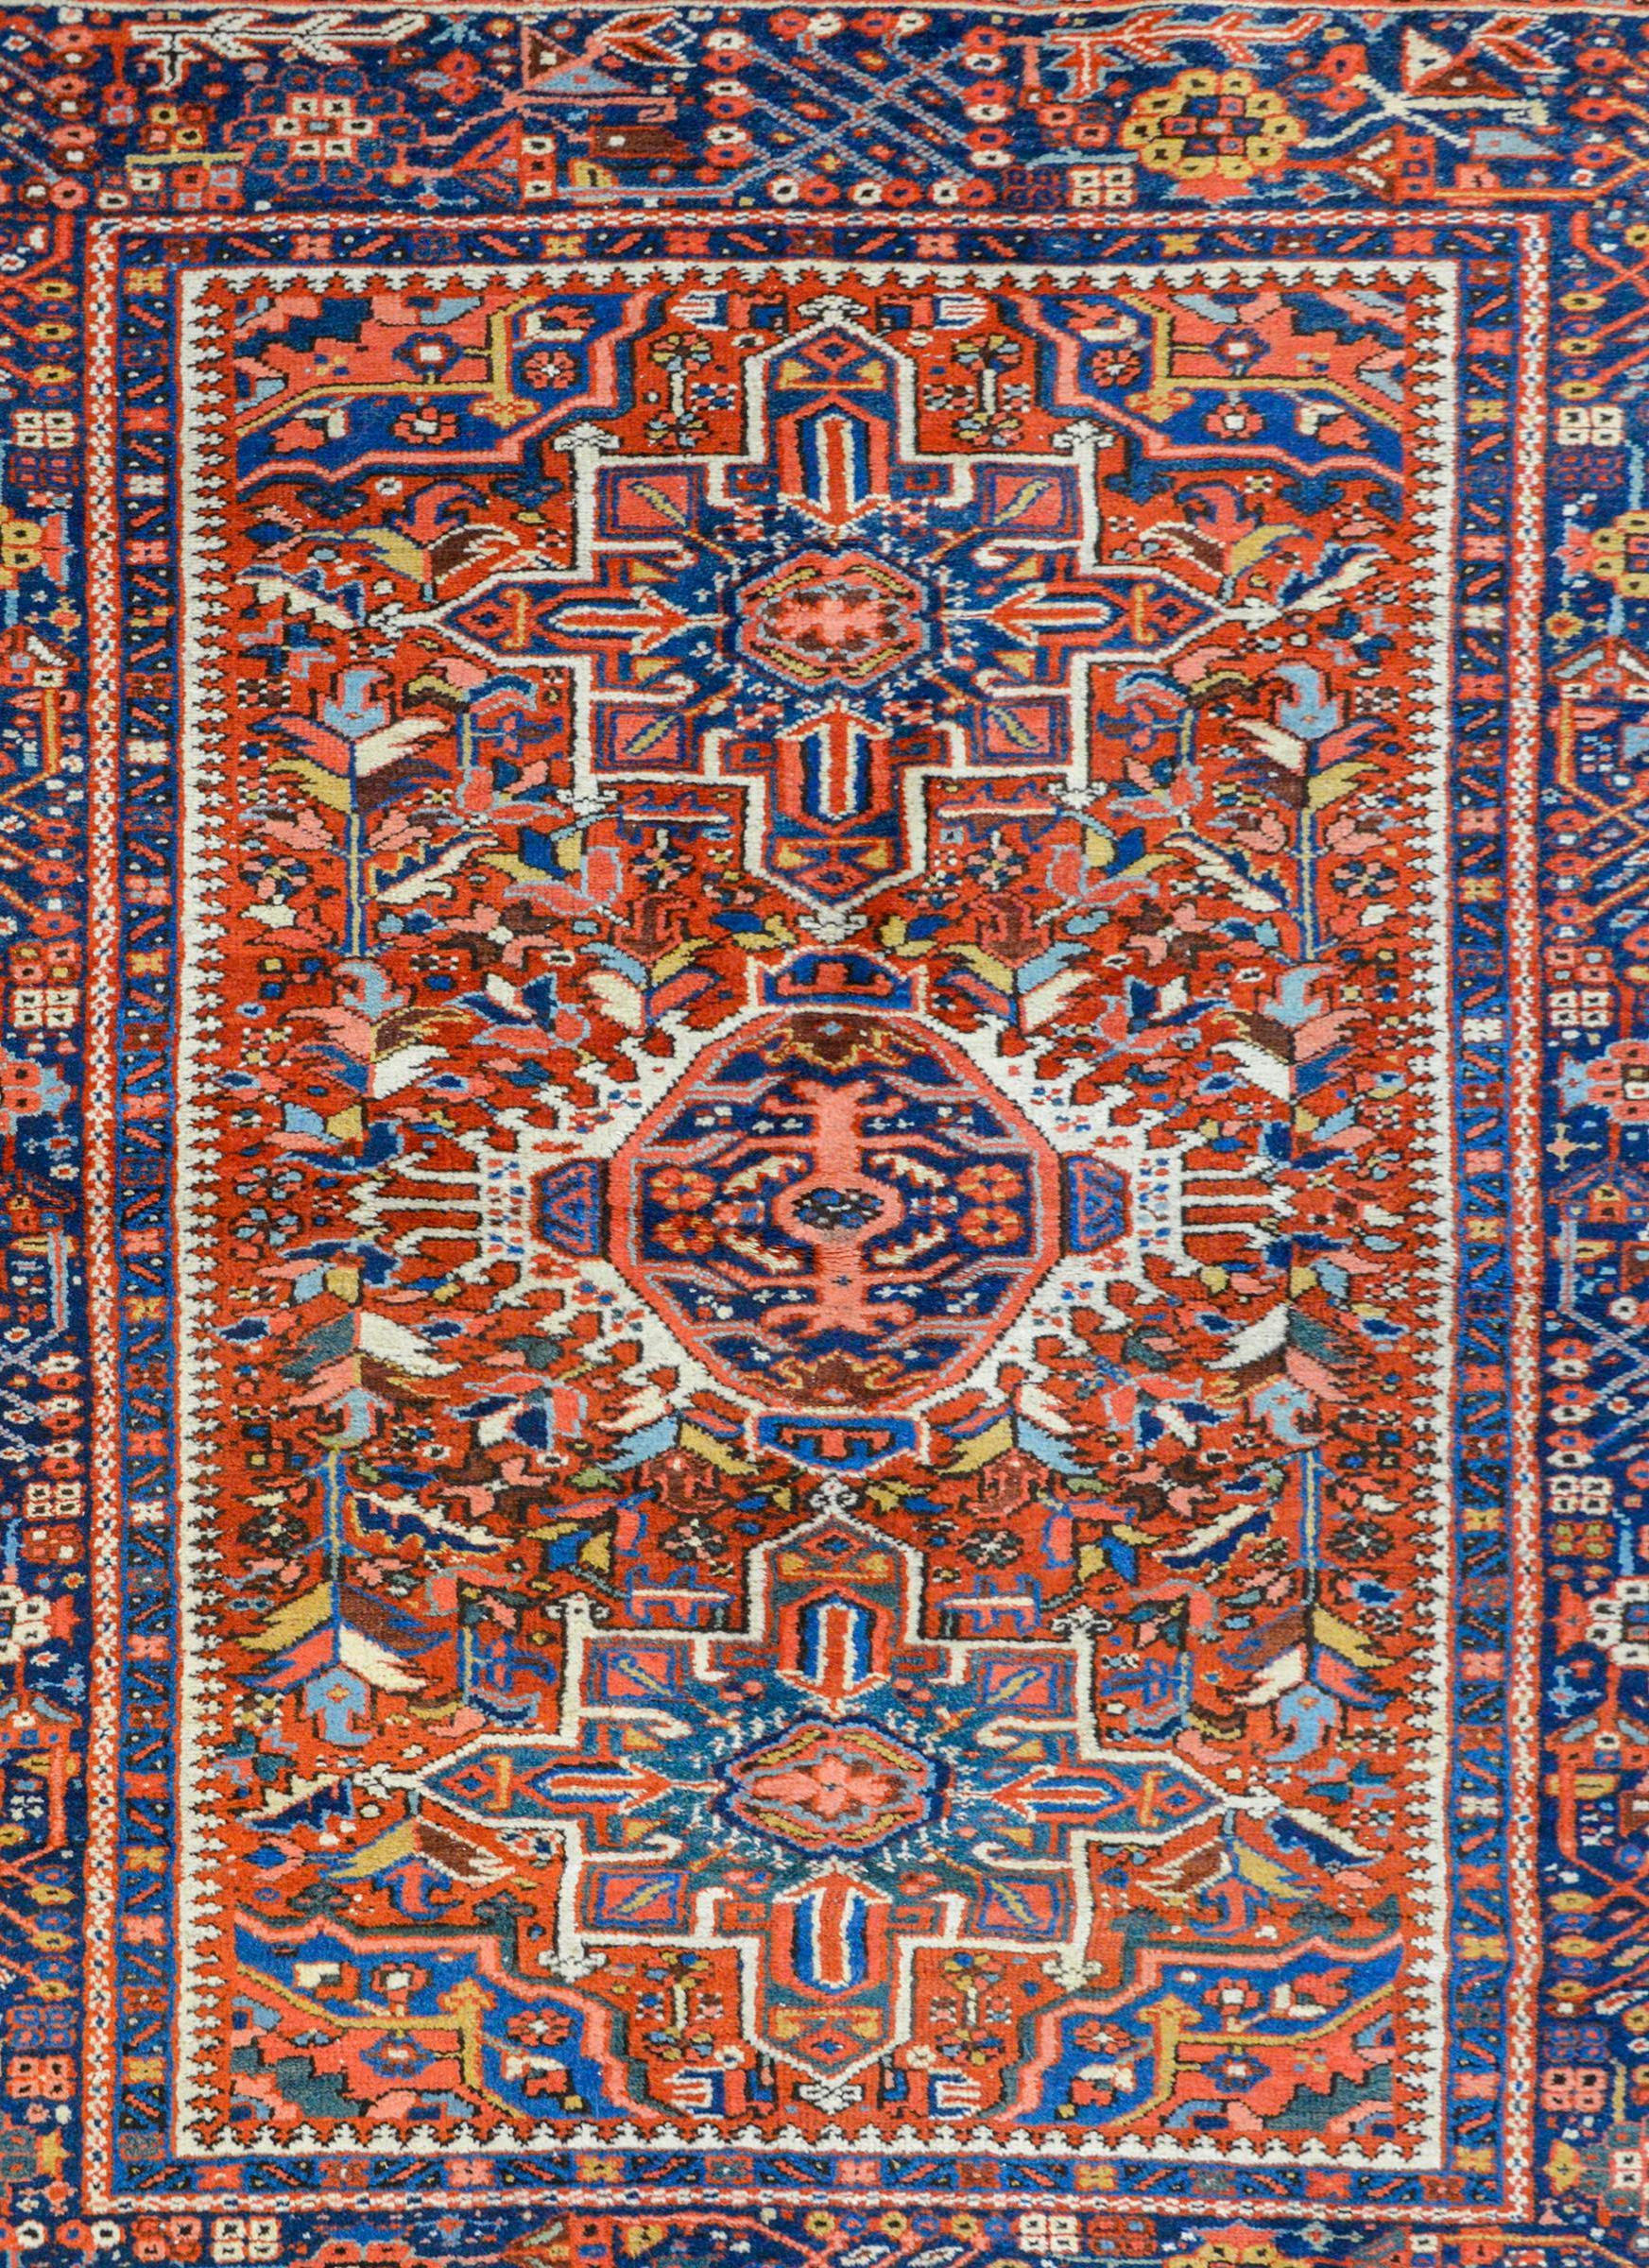 Ein schöner persischer Karajeh-Teppich aus dem frühen 20. Jahrhundert mit drei großen Medaillons vor einem kunstvoll gewebten Feld aus unzähligen Blumen und Blättern, die alle in leuchtendem Karmesinrot, Indigos, Gold, Grün und weißer Wolle gewebt